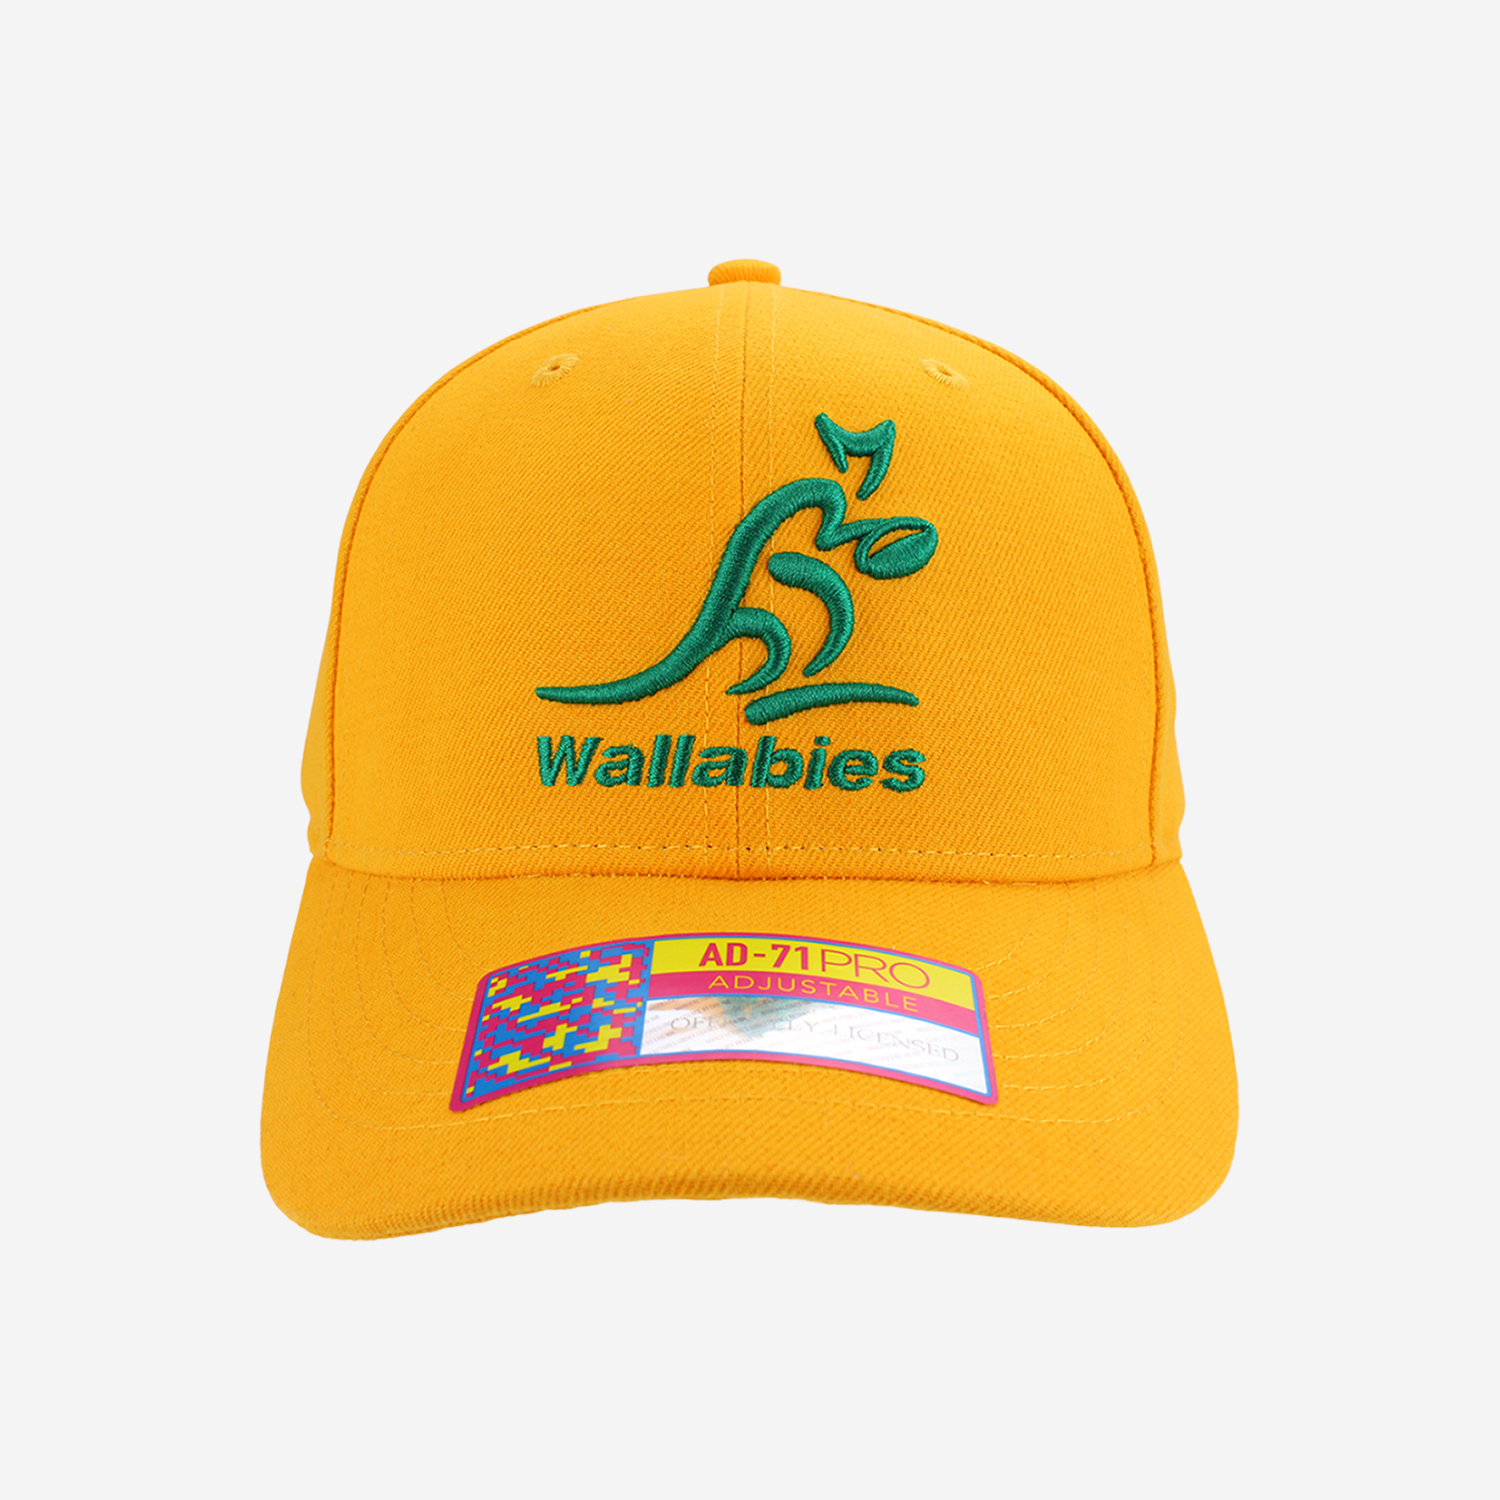 Wallabies caps